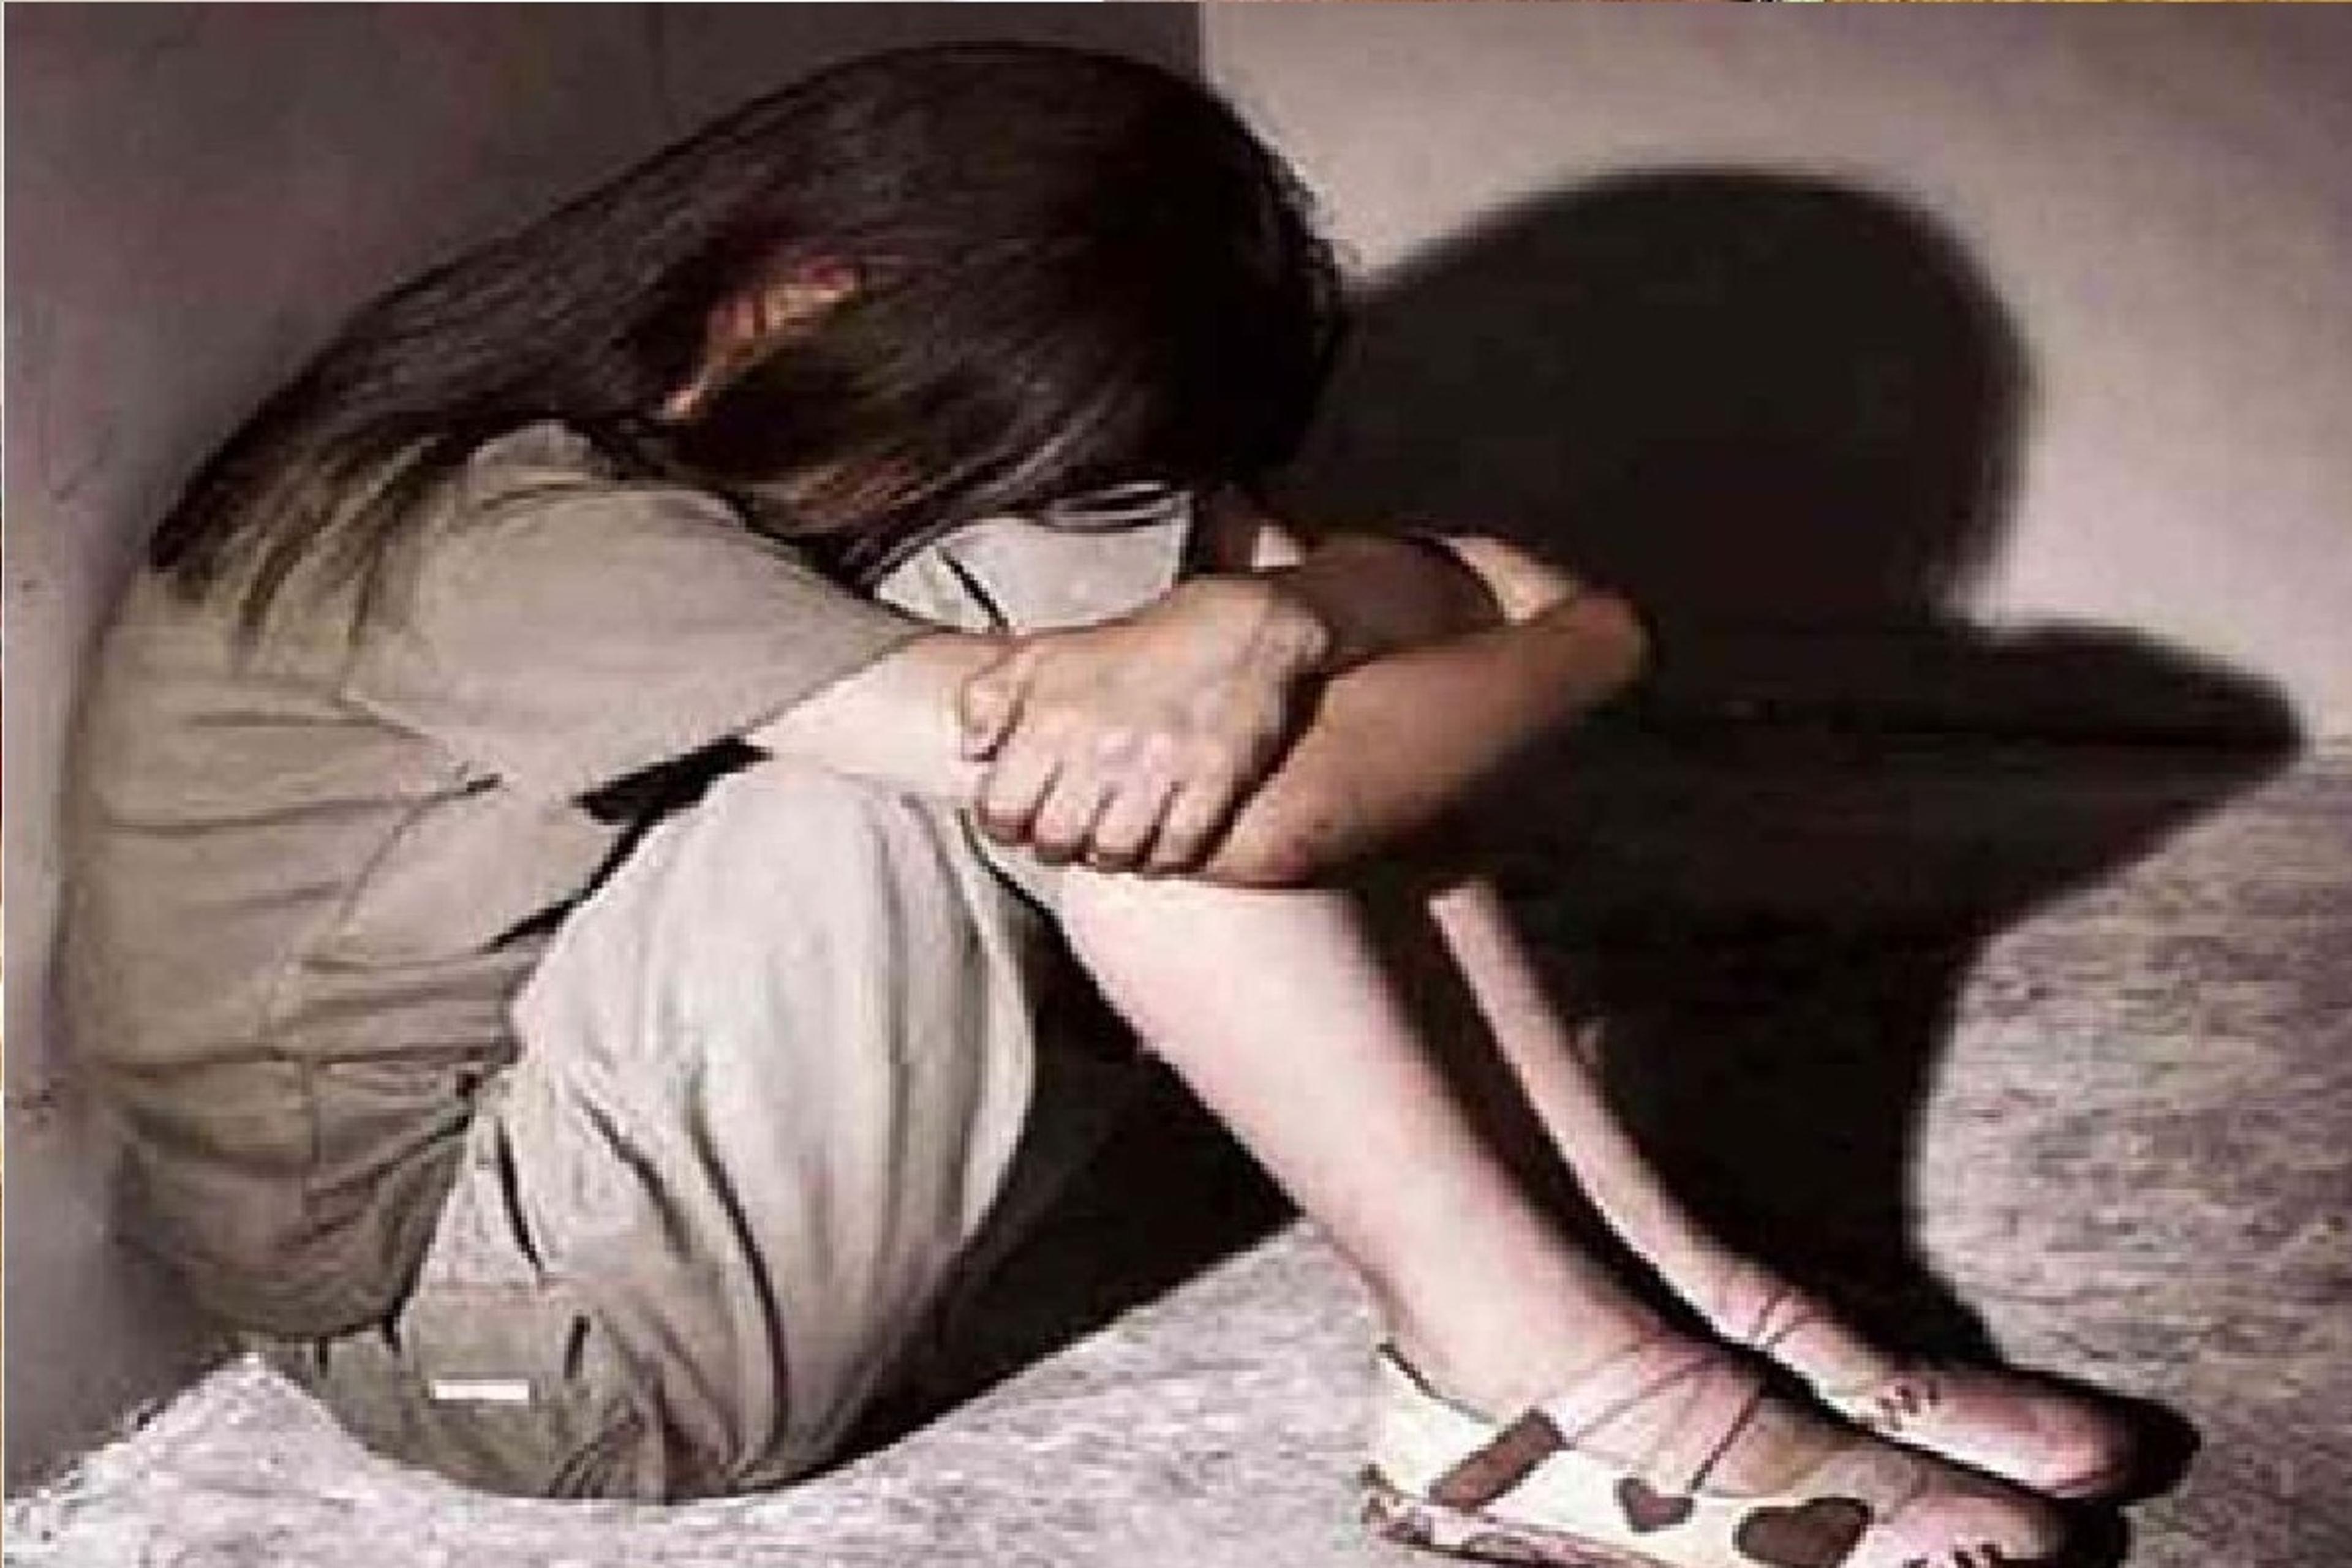 14 साल की बच्ची को किया किडनैप, अंधेरे में ले जाकर किया बलात्कार, दर्द से चीखती
रही मासूम